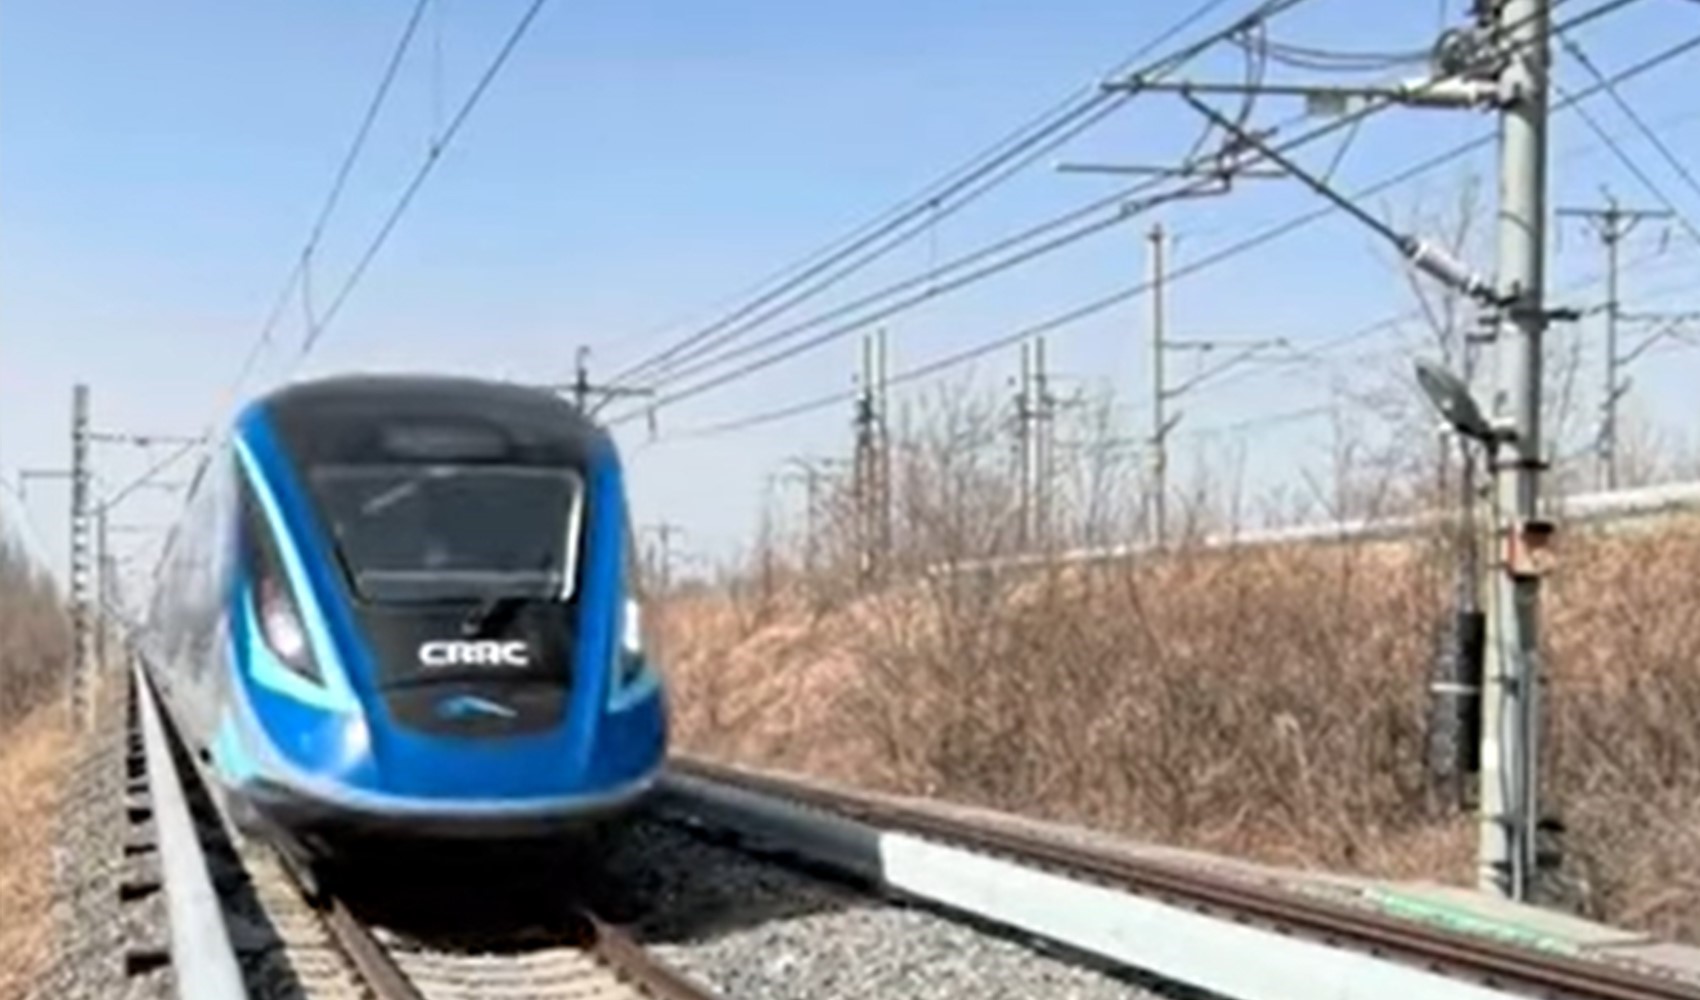 Temiz toplu taşıma adına önemli adım! Çin'in bin km menzilli hidrojen yakıtlı treni, test sürüşünü tamamladı